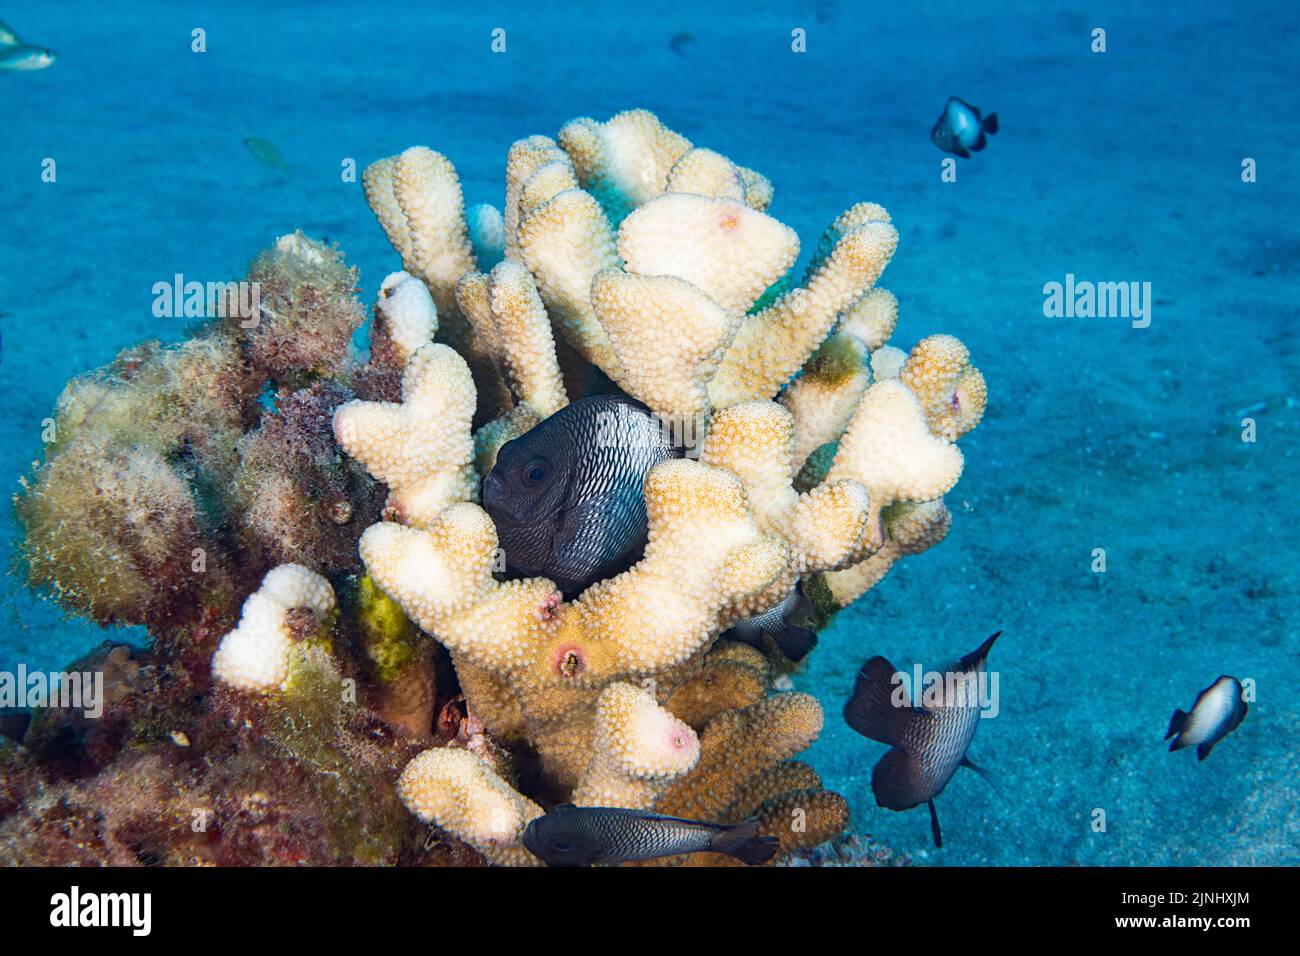 Dascyllus hawaiano endémico, damisela hawaiana de threespot, o damostius hawaiano del dominó, Dascyllus albisella, en coral de la coraza parcialmente blanqueada, Hawaii Foto de stock